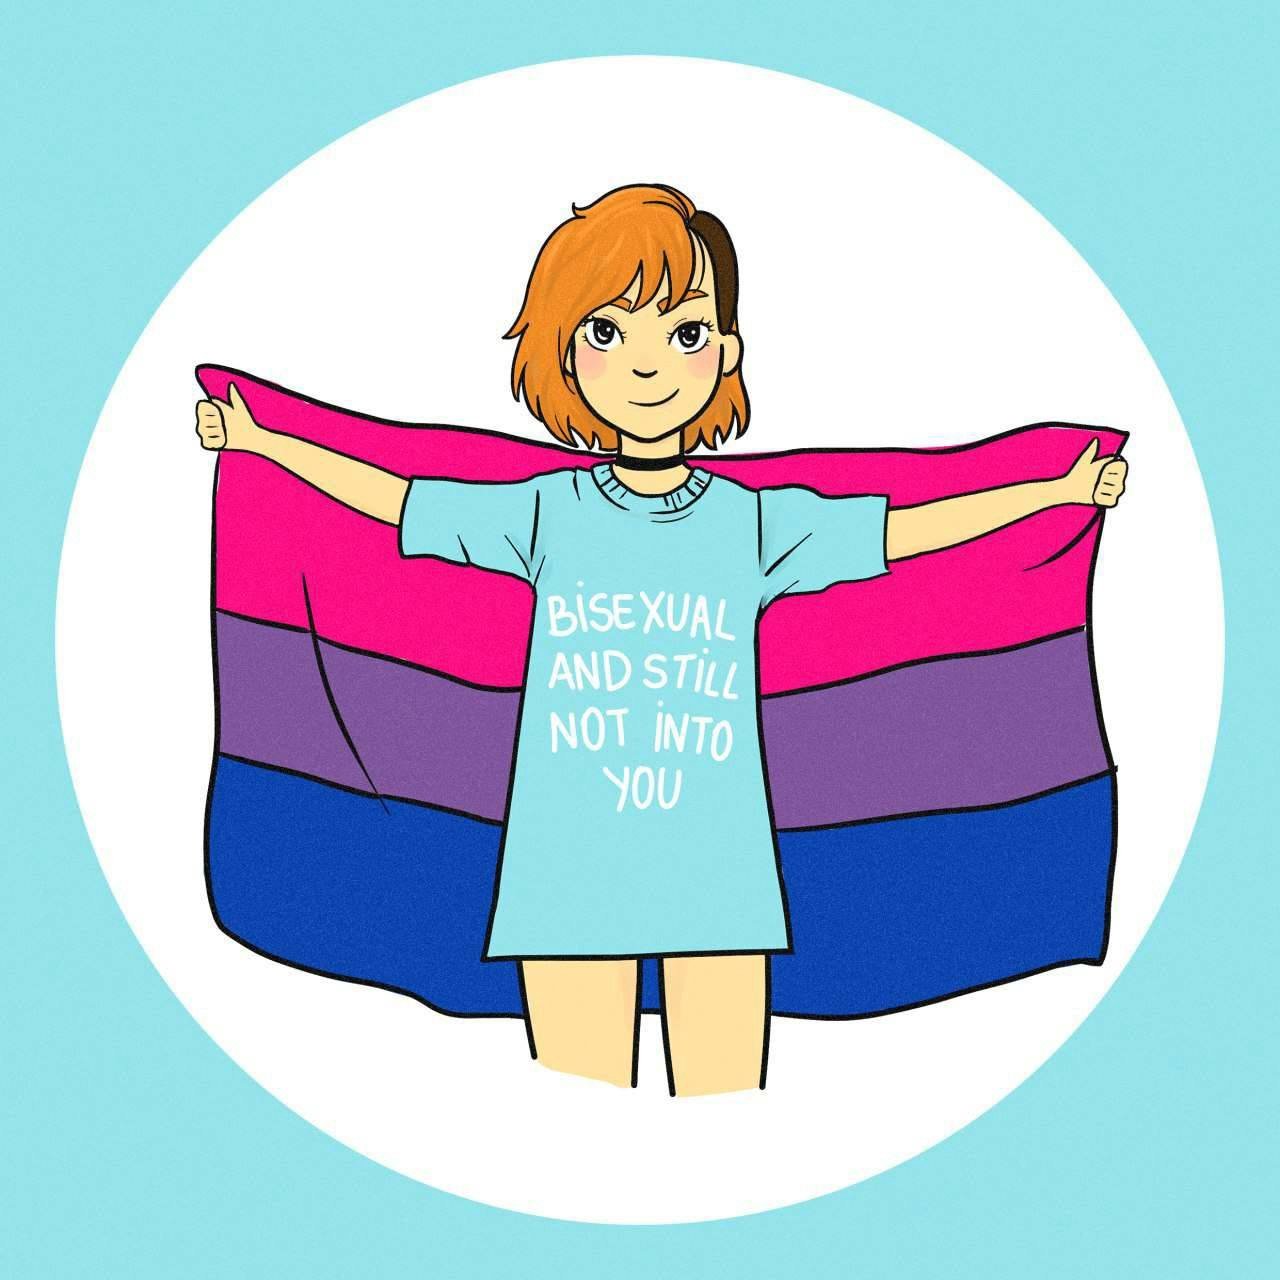 Ilustração de uma garota que segura bandeira bissexual com os braços abertos e veste uma camisa com os dizeres “Bisexual and still not into you” — “Bissexual e ainda assim não afim de você”